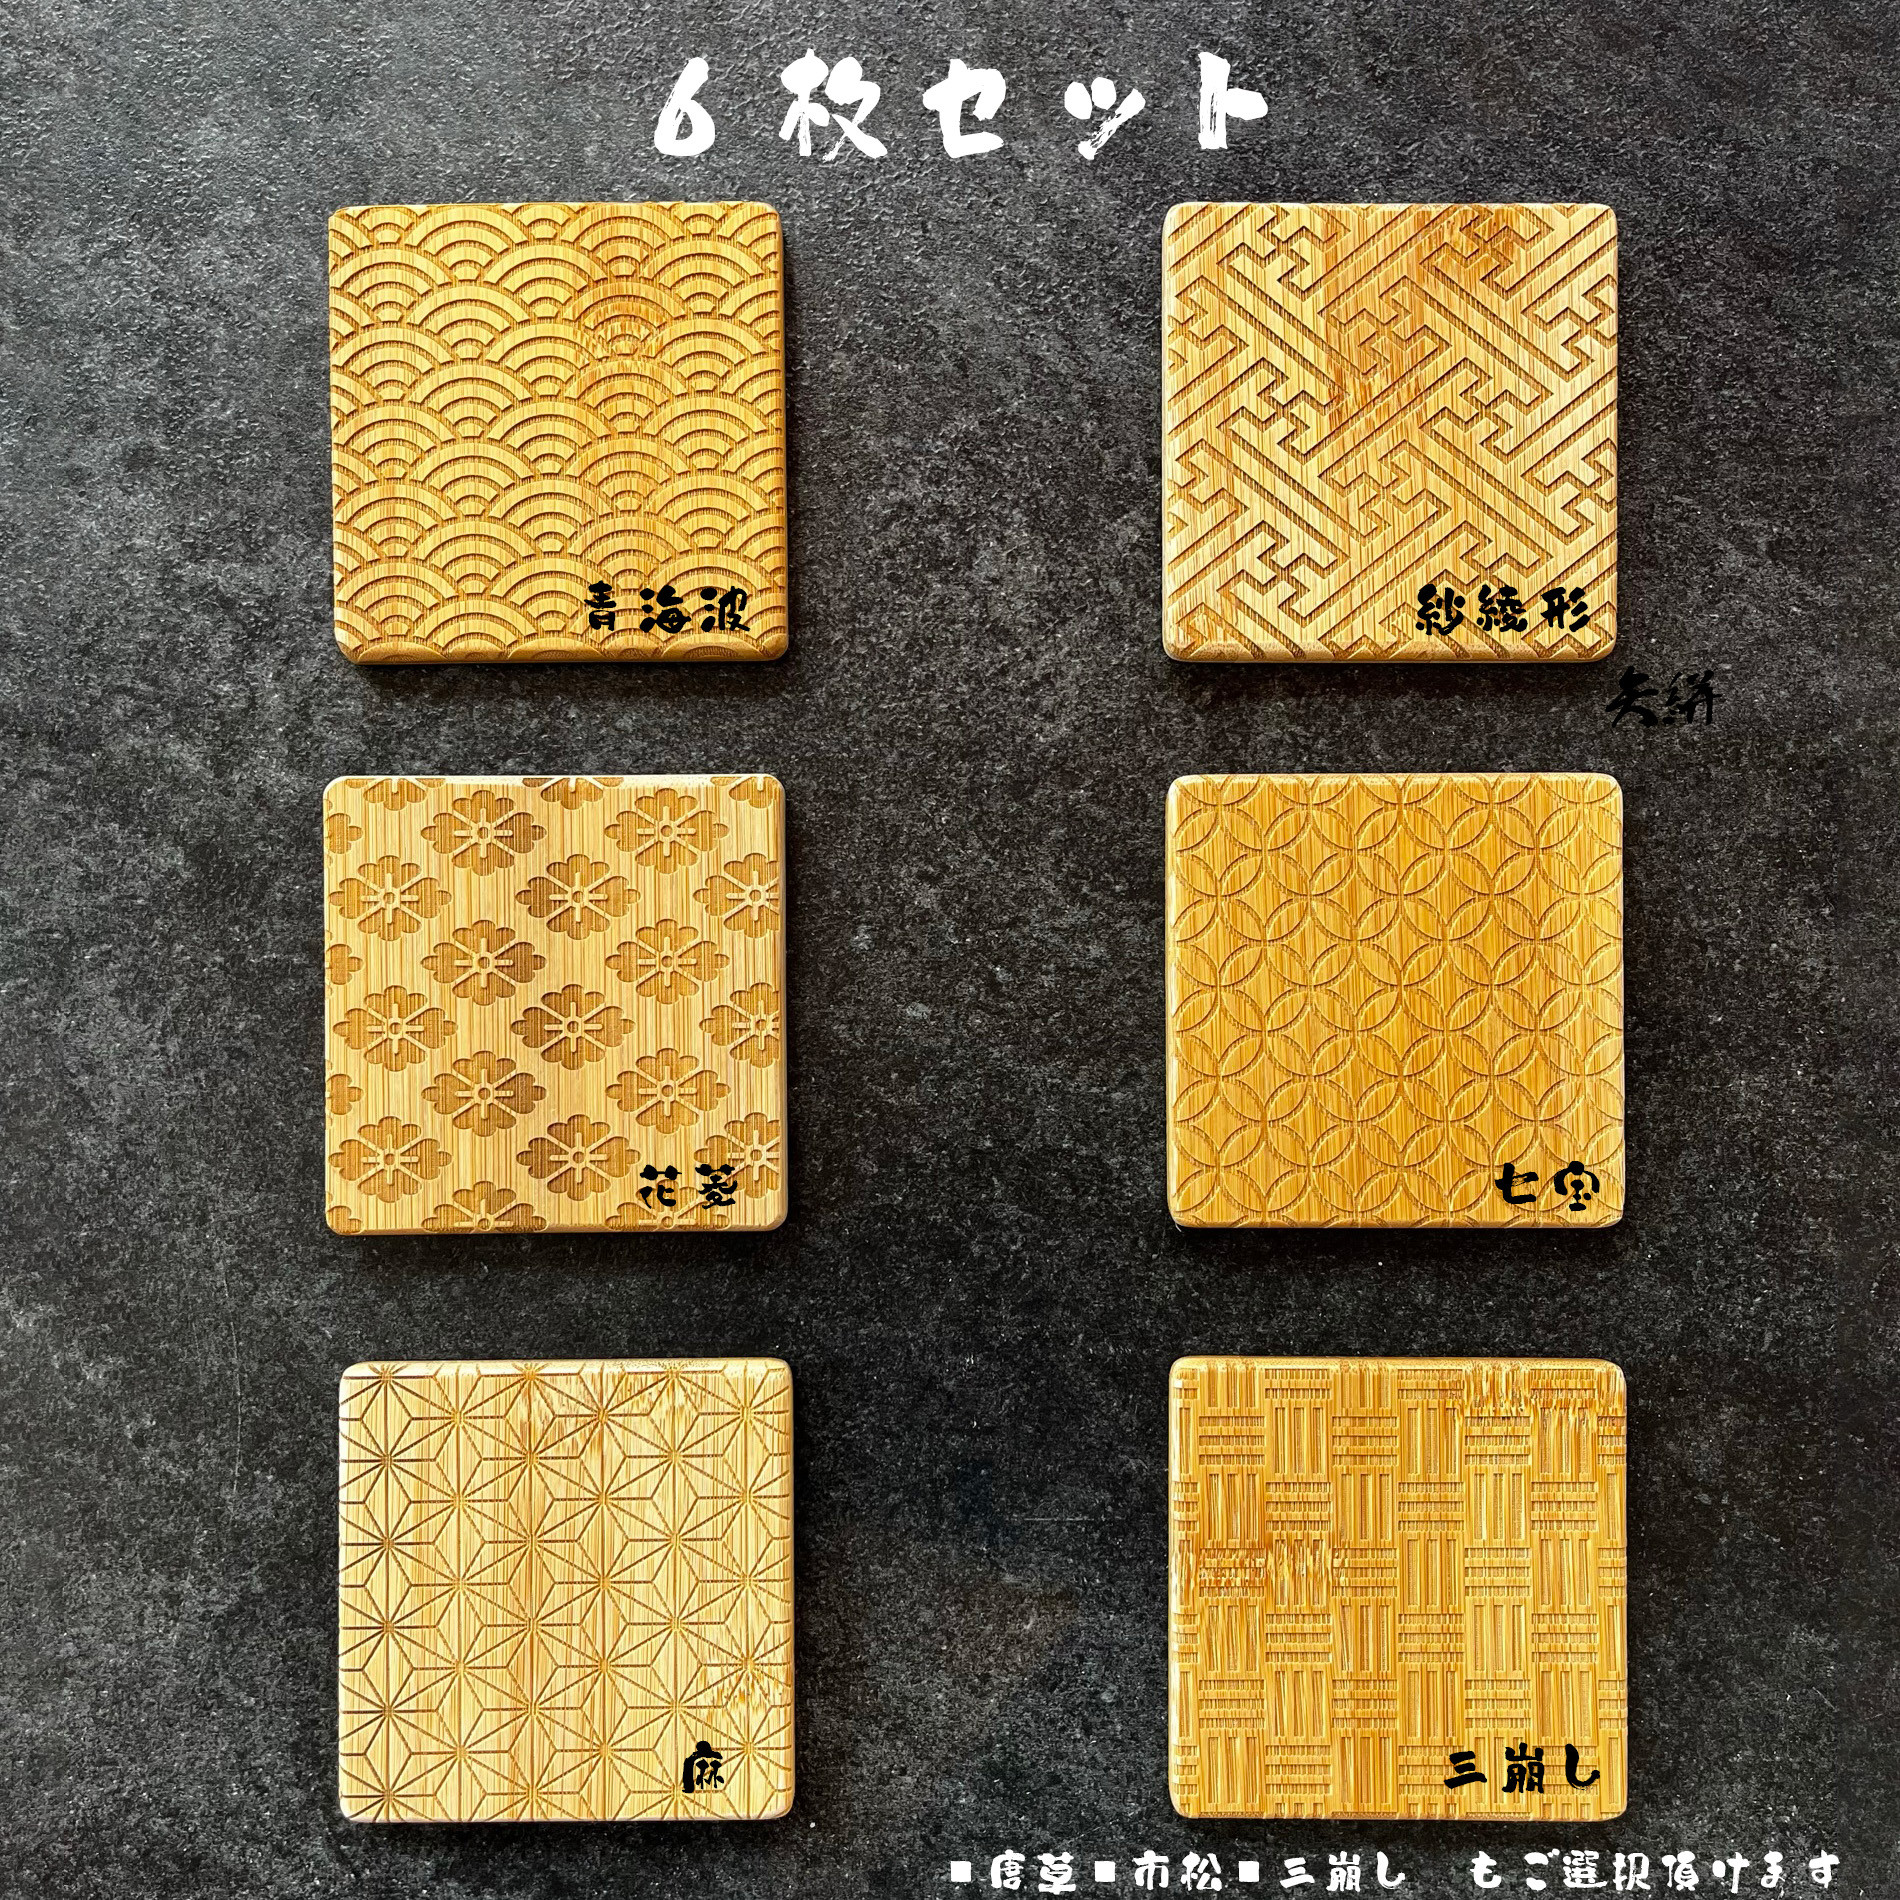 
バンブーコースター 日本伝統柄 和柄６枚セット
